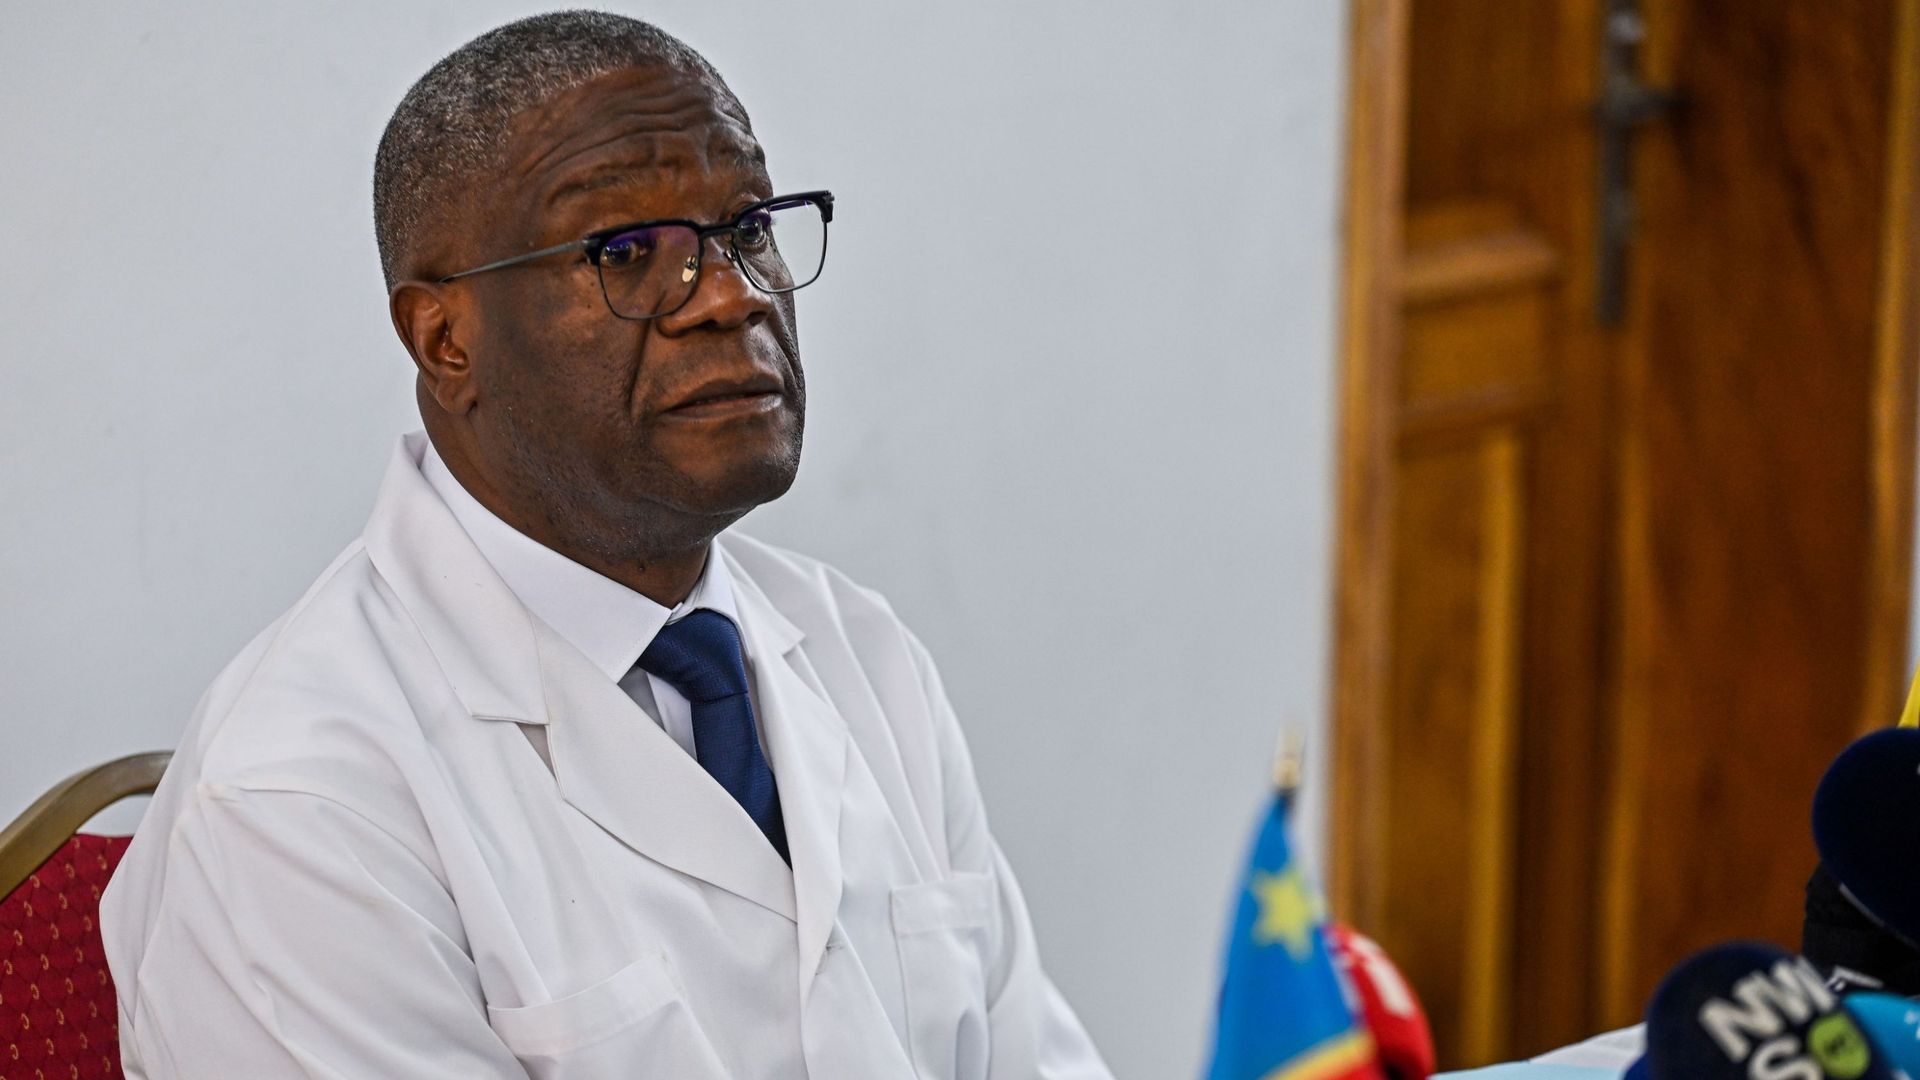 Denis Mukwege avant une visite à l'hôpital de Panzi, dans le cadre d'une visite officielle du couple royal belge en République démocratique du Congo, dimanche 12 juin 2022, à Bukavu.